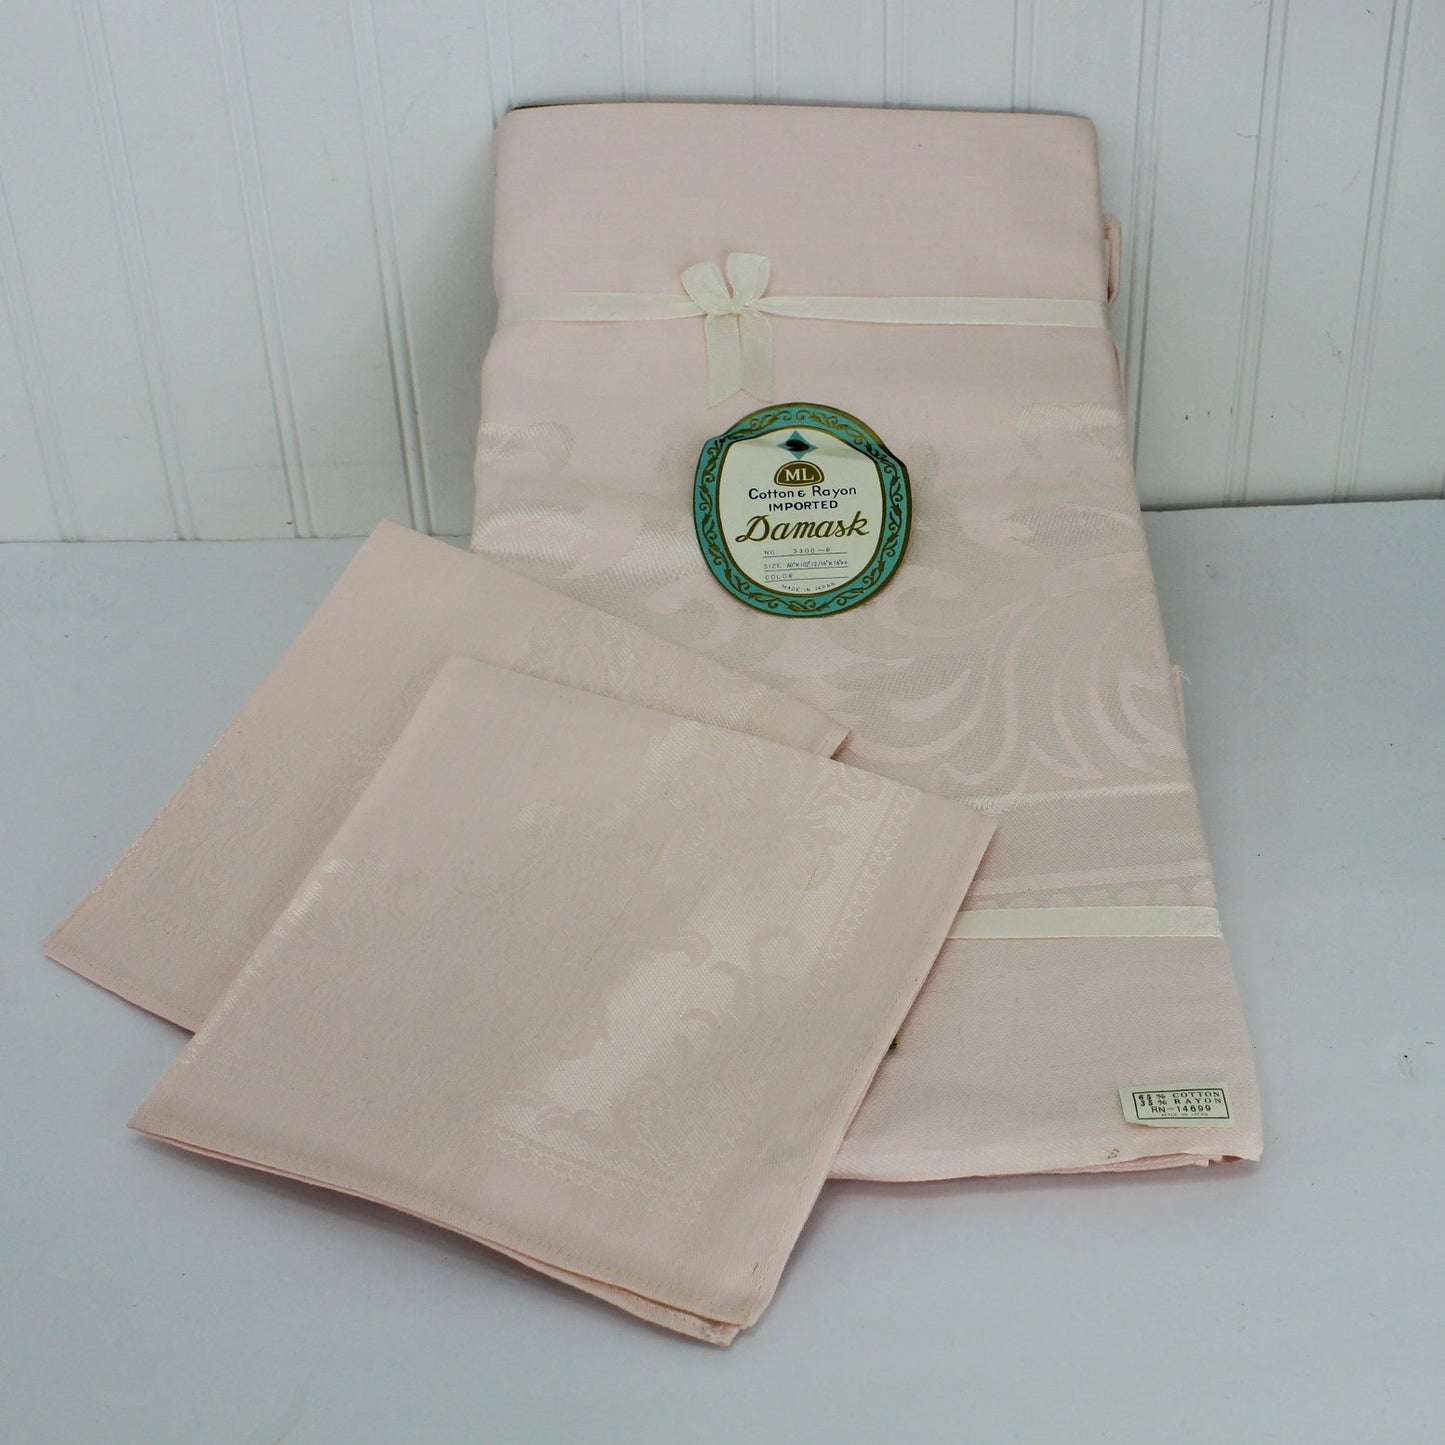 Pink Damask Tablecloth New Vintage Original Labels 6 Matching Napkins Japan showing 2 napkins